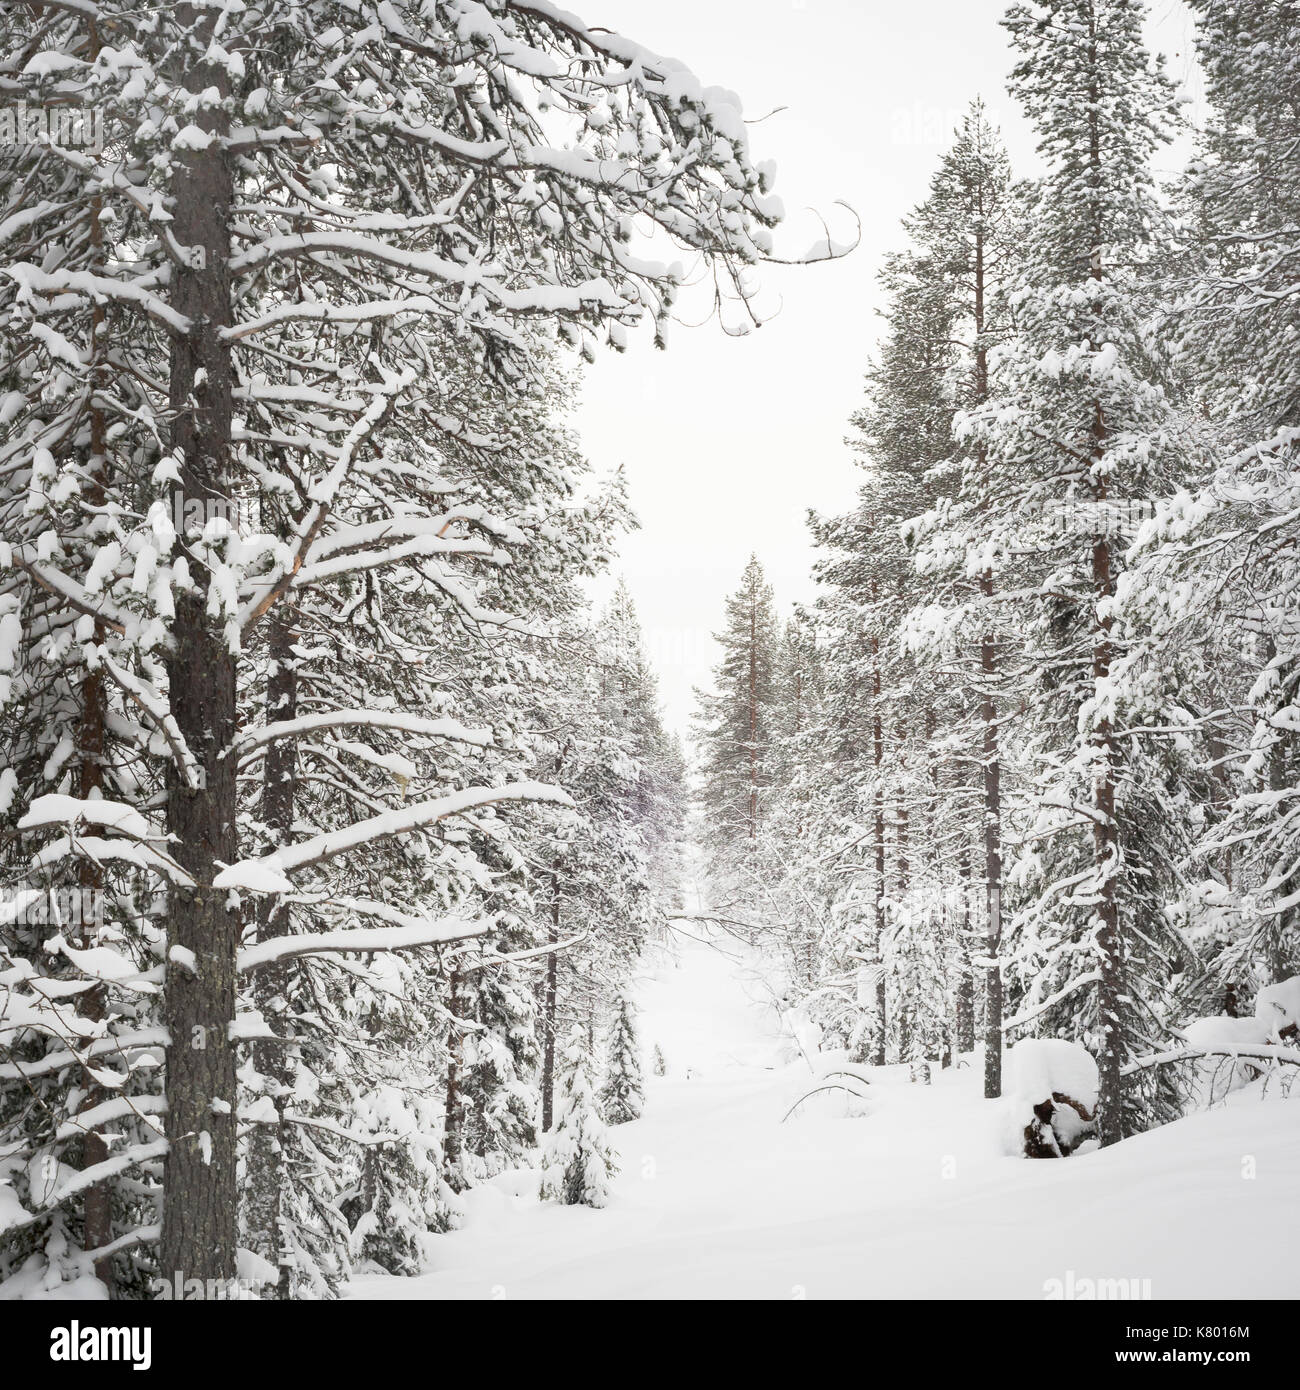 Forest with snow, Kuertunturi, Äkäslompolo, Lapland, Finland Stock Photo